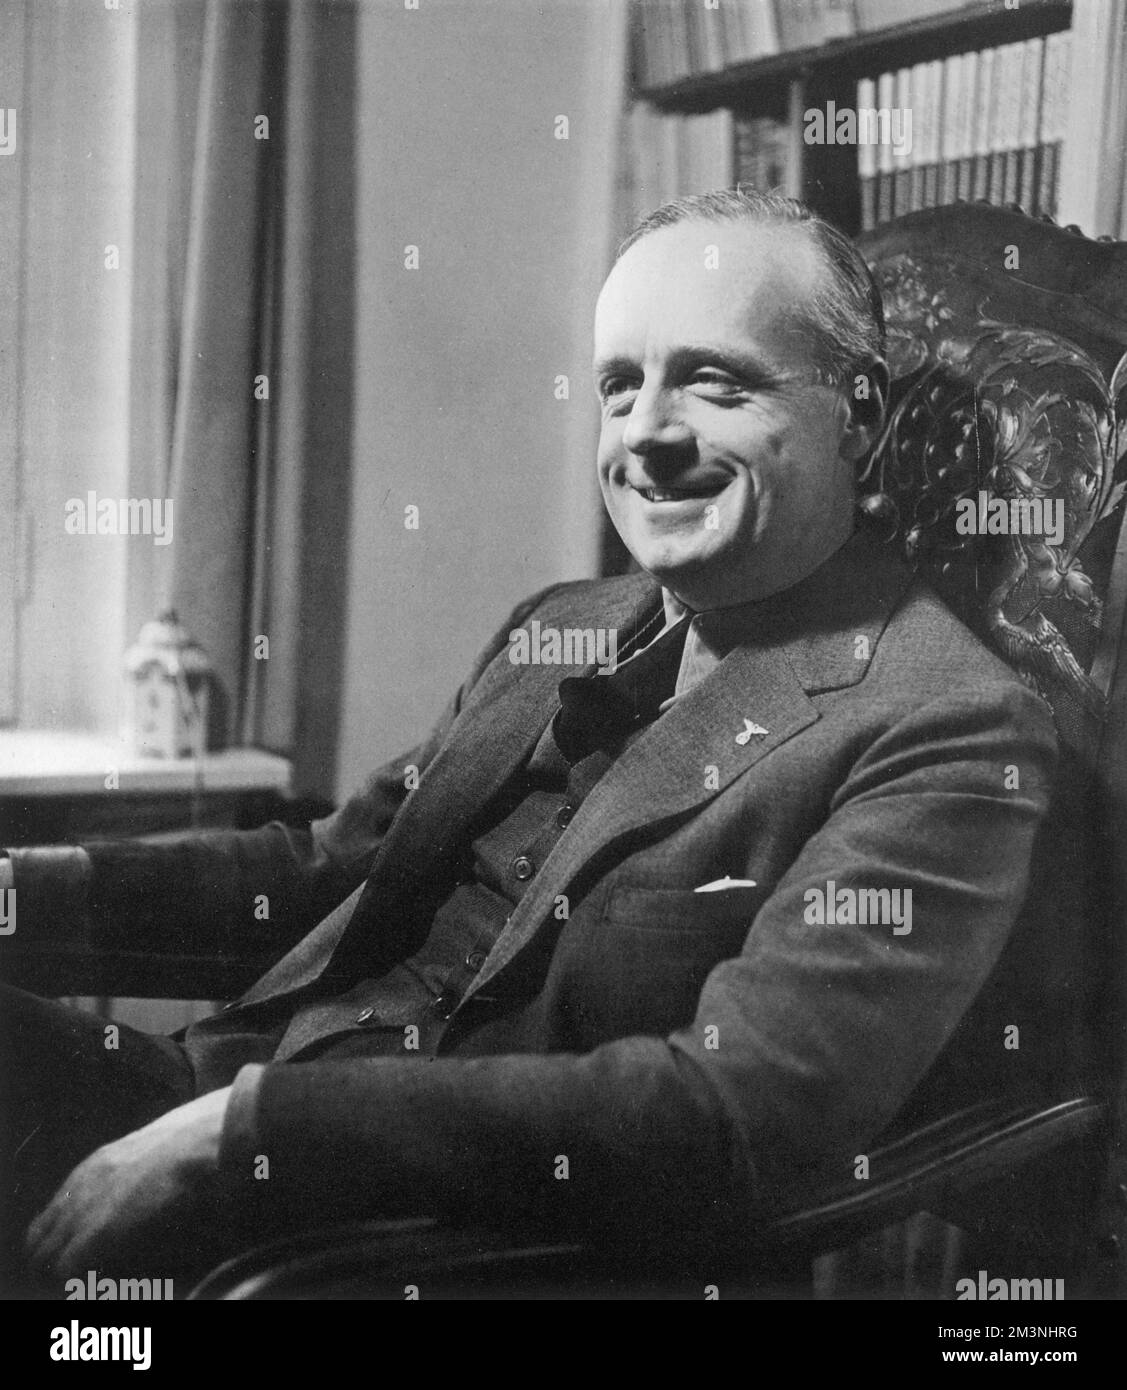 Joachim von Ribbentrop (1893 - 1946), Ambasciatore tedesco in Gran Bretagna e successivamente Ministro degli esteri tedesco, si è recato nel Bystander nel 1935 e ha descritto di avere un "volto intelligente e umoristico". Data: 1935 Foto Stock